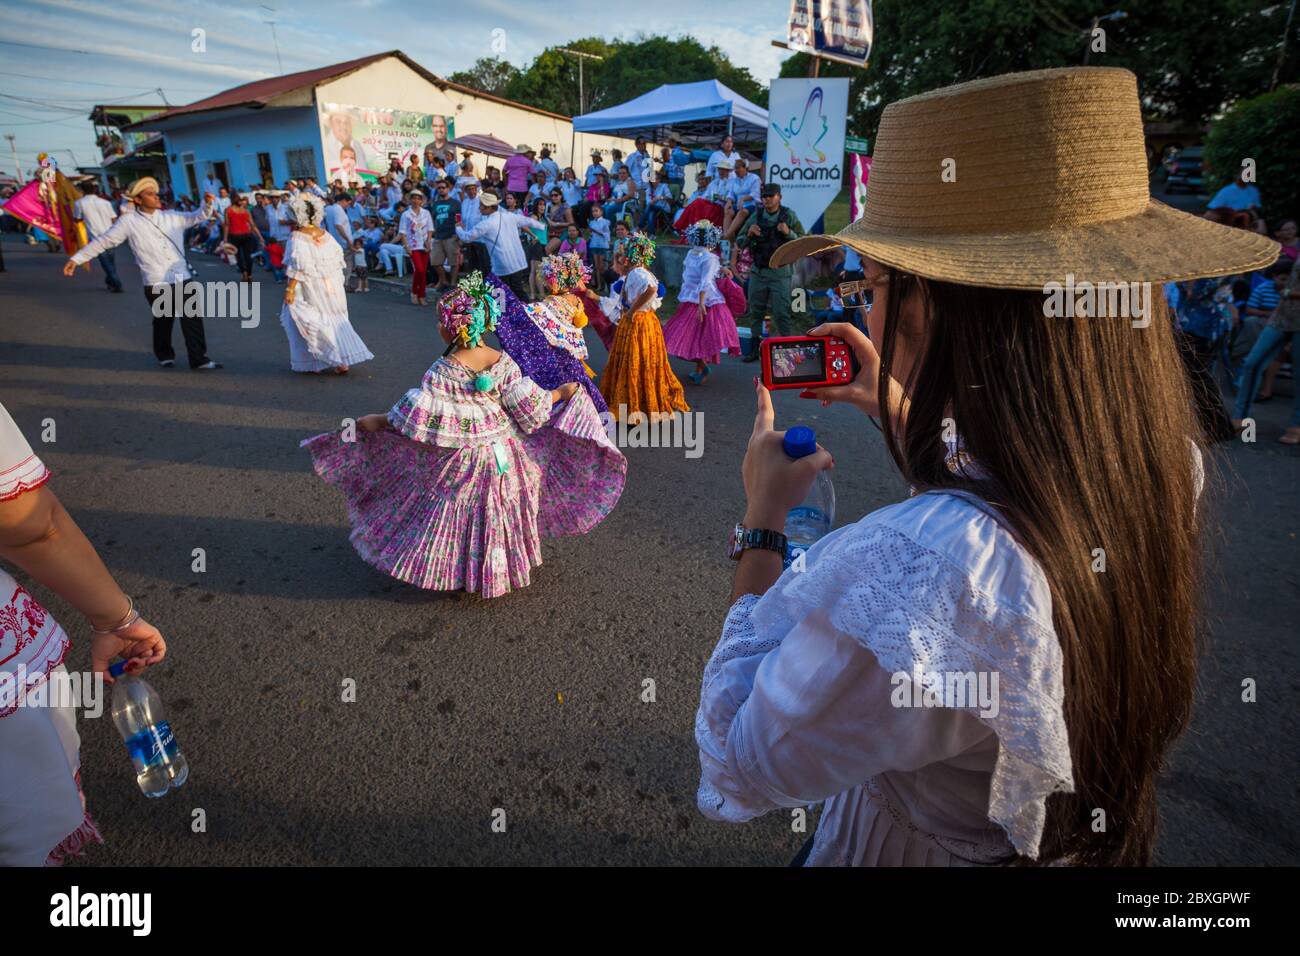 The annual event 'El desfile de las mil polleras' (thousand polleras) in Las Tablas, Los Santos province, Republic of Panama. Stock Photo